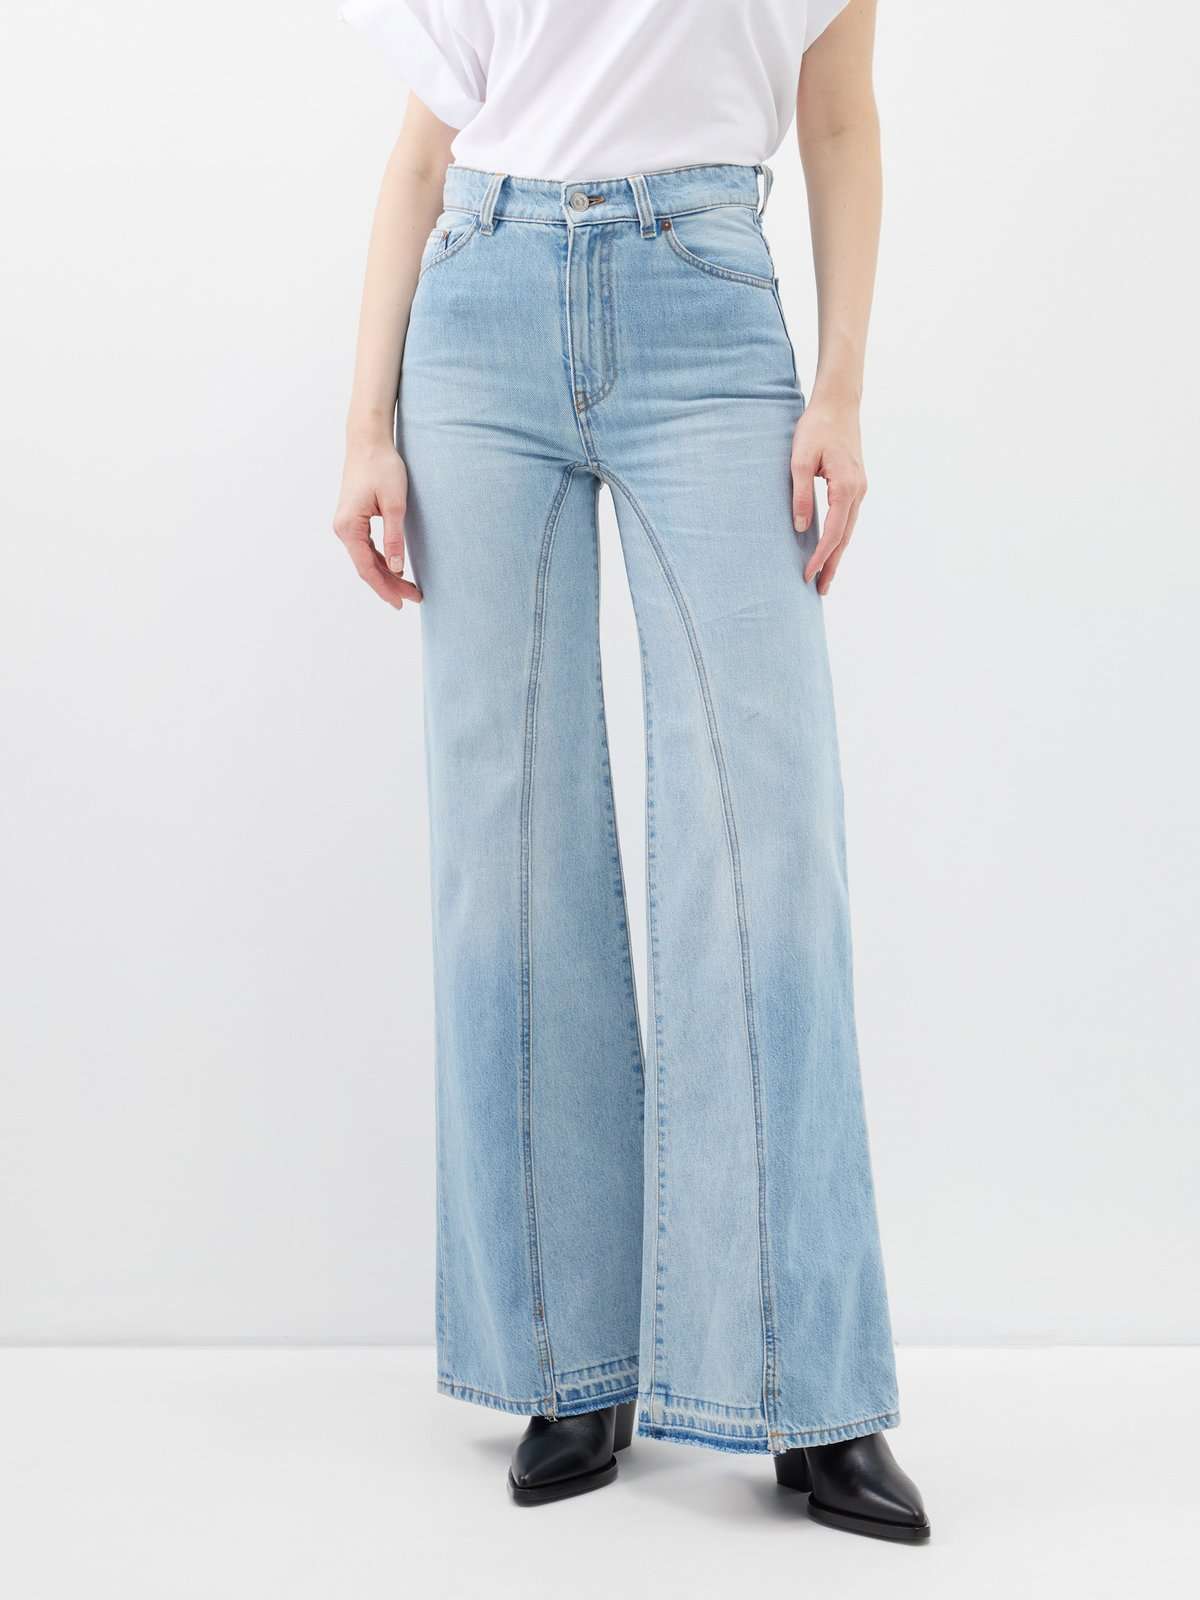 джинсы широкого кроя Bianca с центральным швом